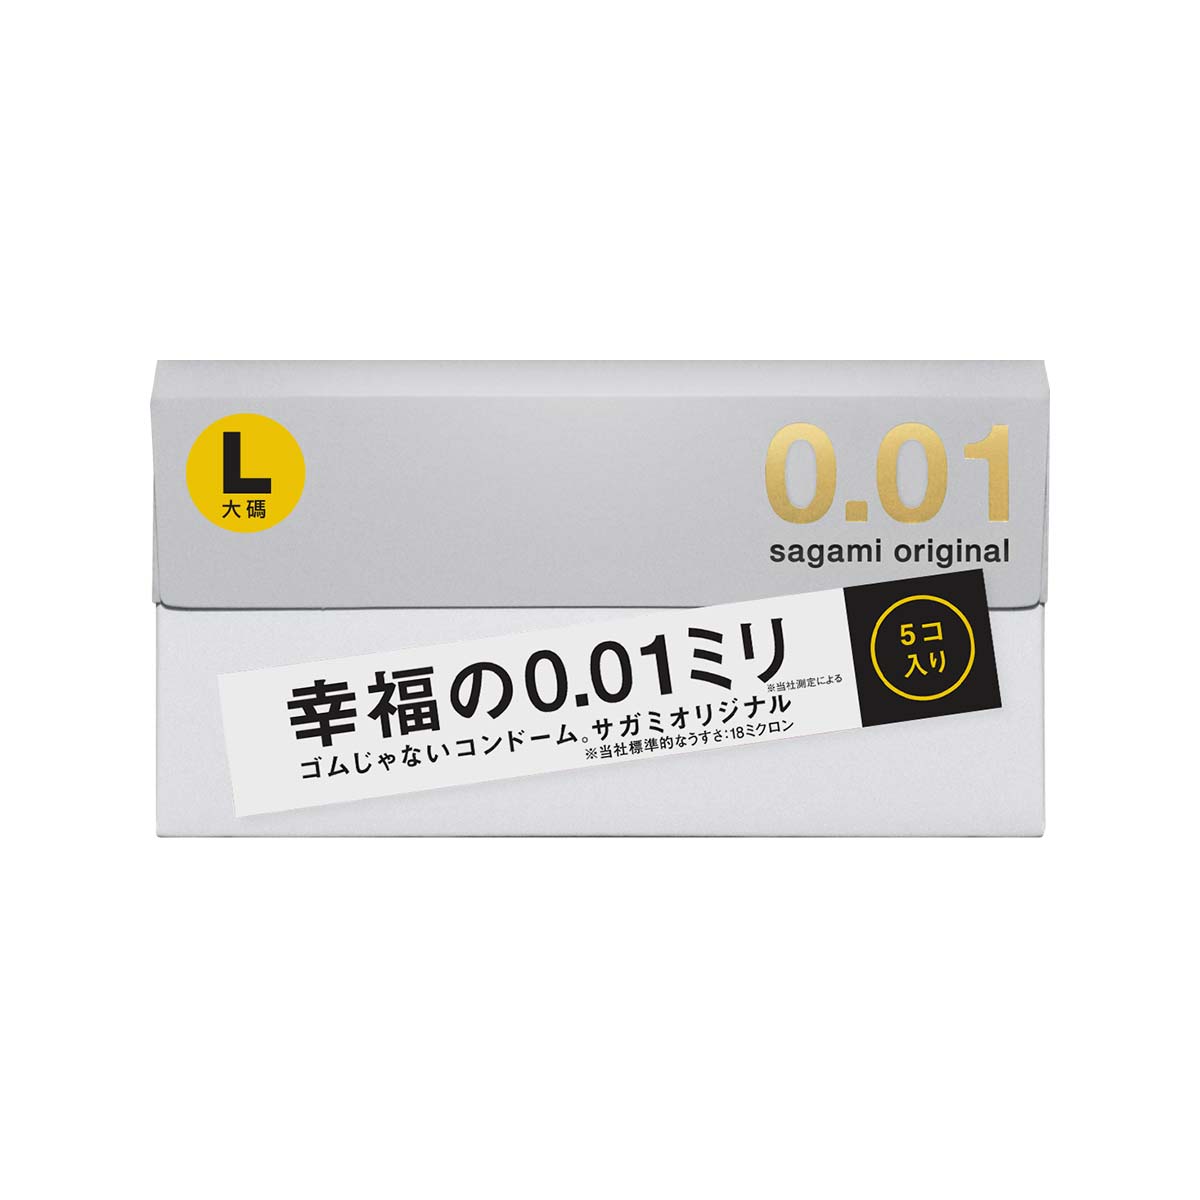 Презервативы Sagami Original 0,01 L-size, полиуретановые, 5 шт